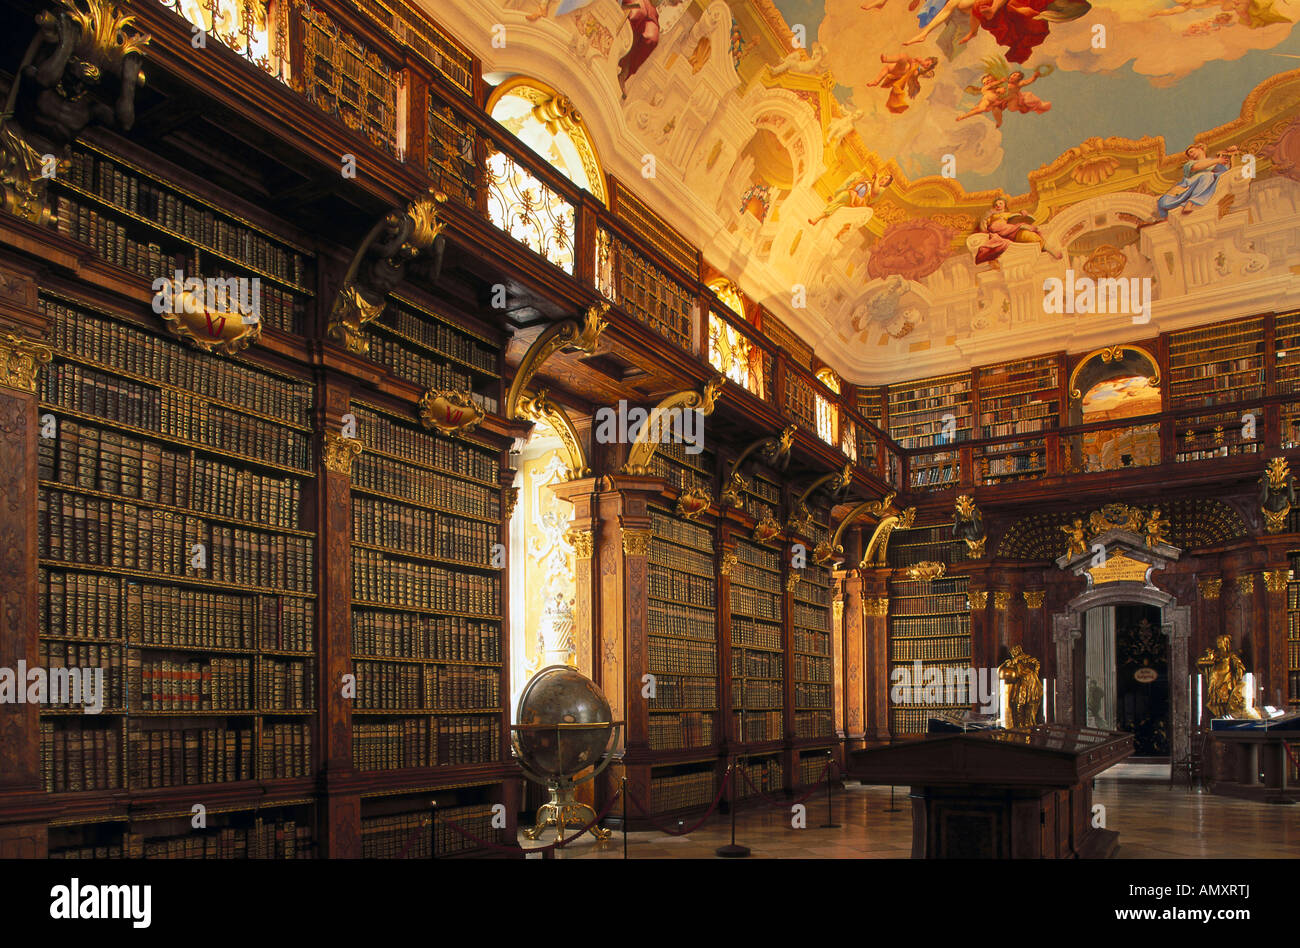 Bibliothek im Kloster, Benediktiner Stift Melk, Wachau, Niederösterreich,  Österreich Stockfotografie - Alamy